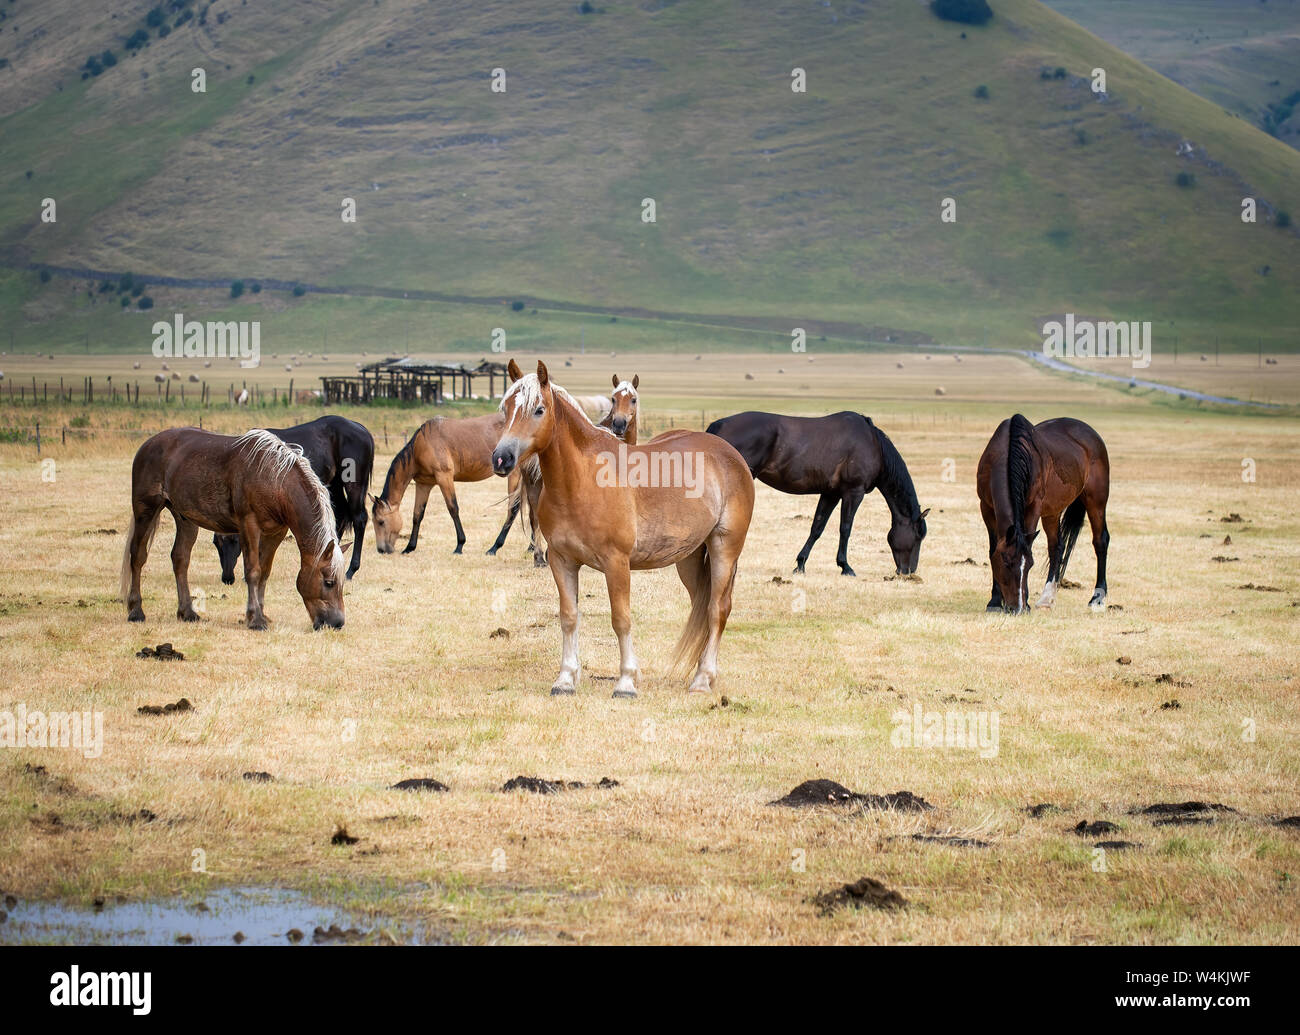 Pferde in Castelluccio Di Norcia in Umbrien, Italien. Reiten ist eine beliebte touristische Aktivität in dem Bereich. Stockfoto